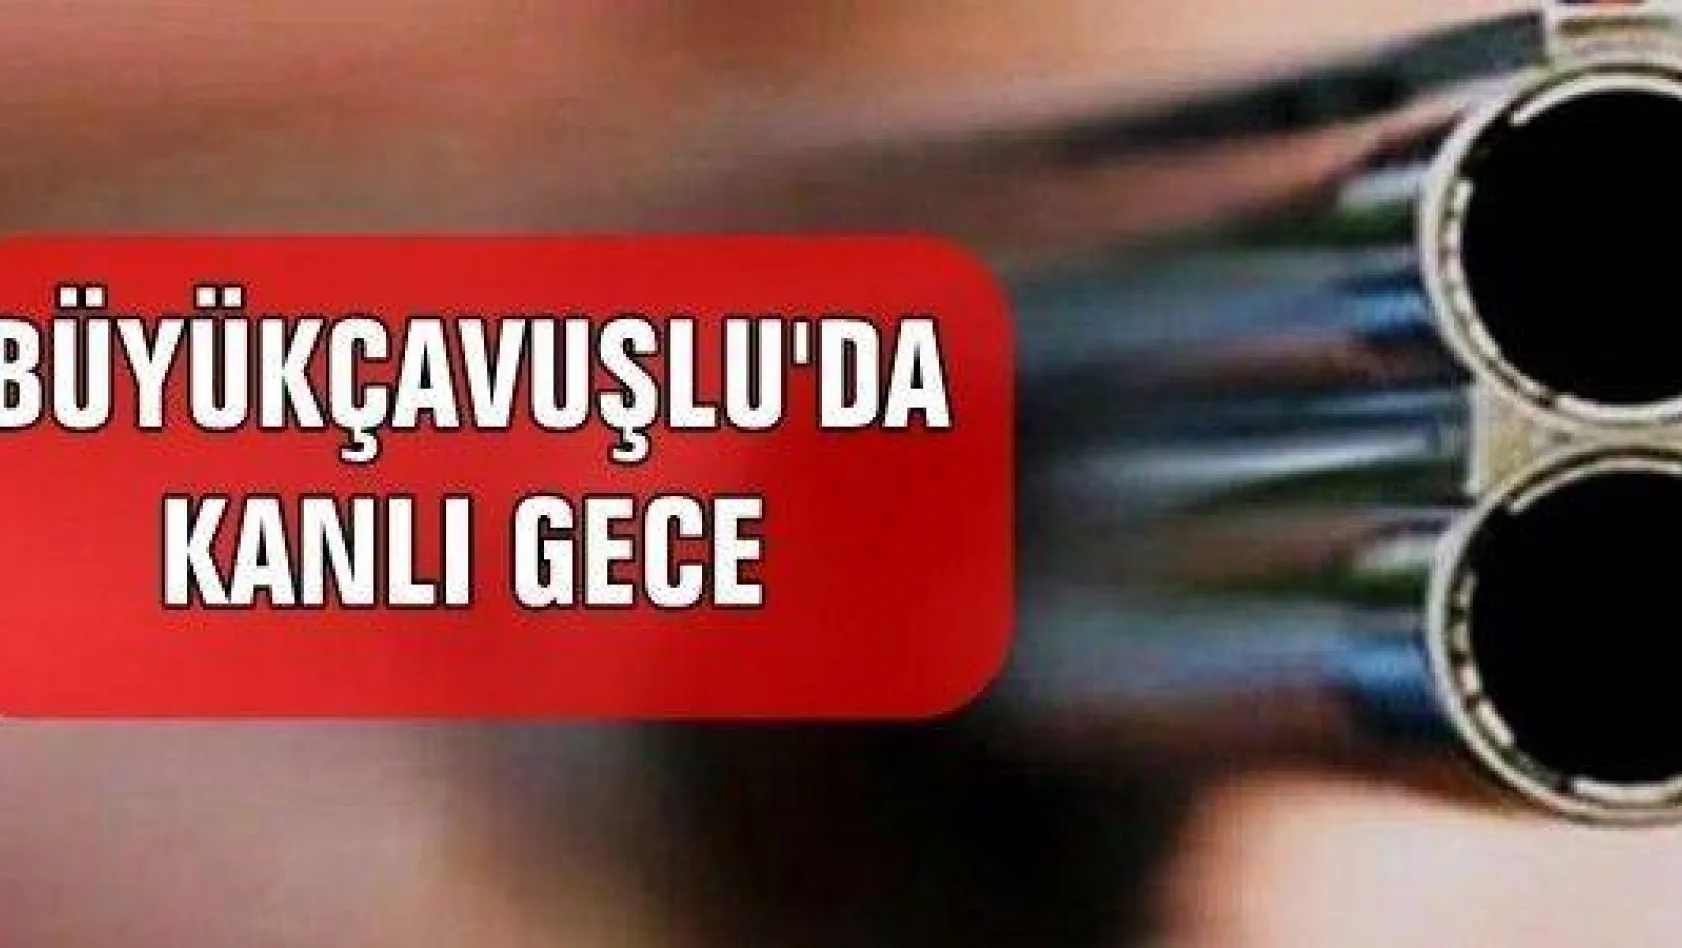 Büyükçavuşlu'da Silahlı Kavga: 1 Ölü, 1 Yaralı